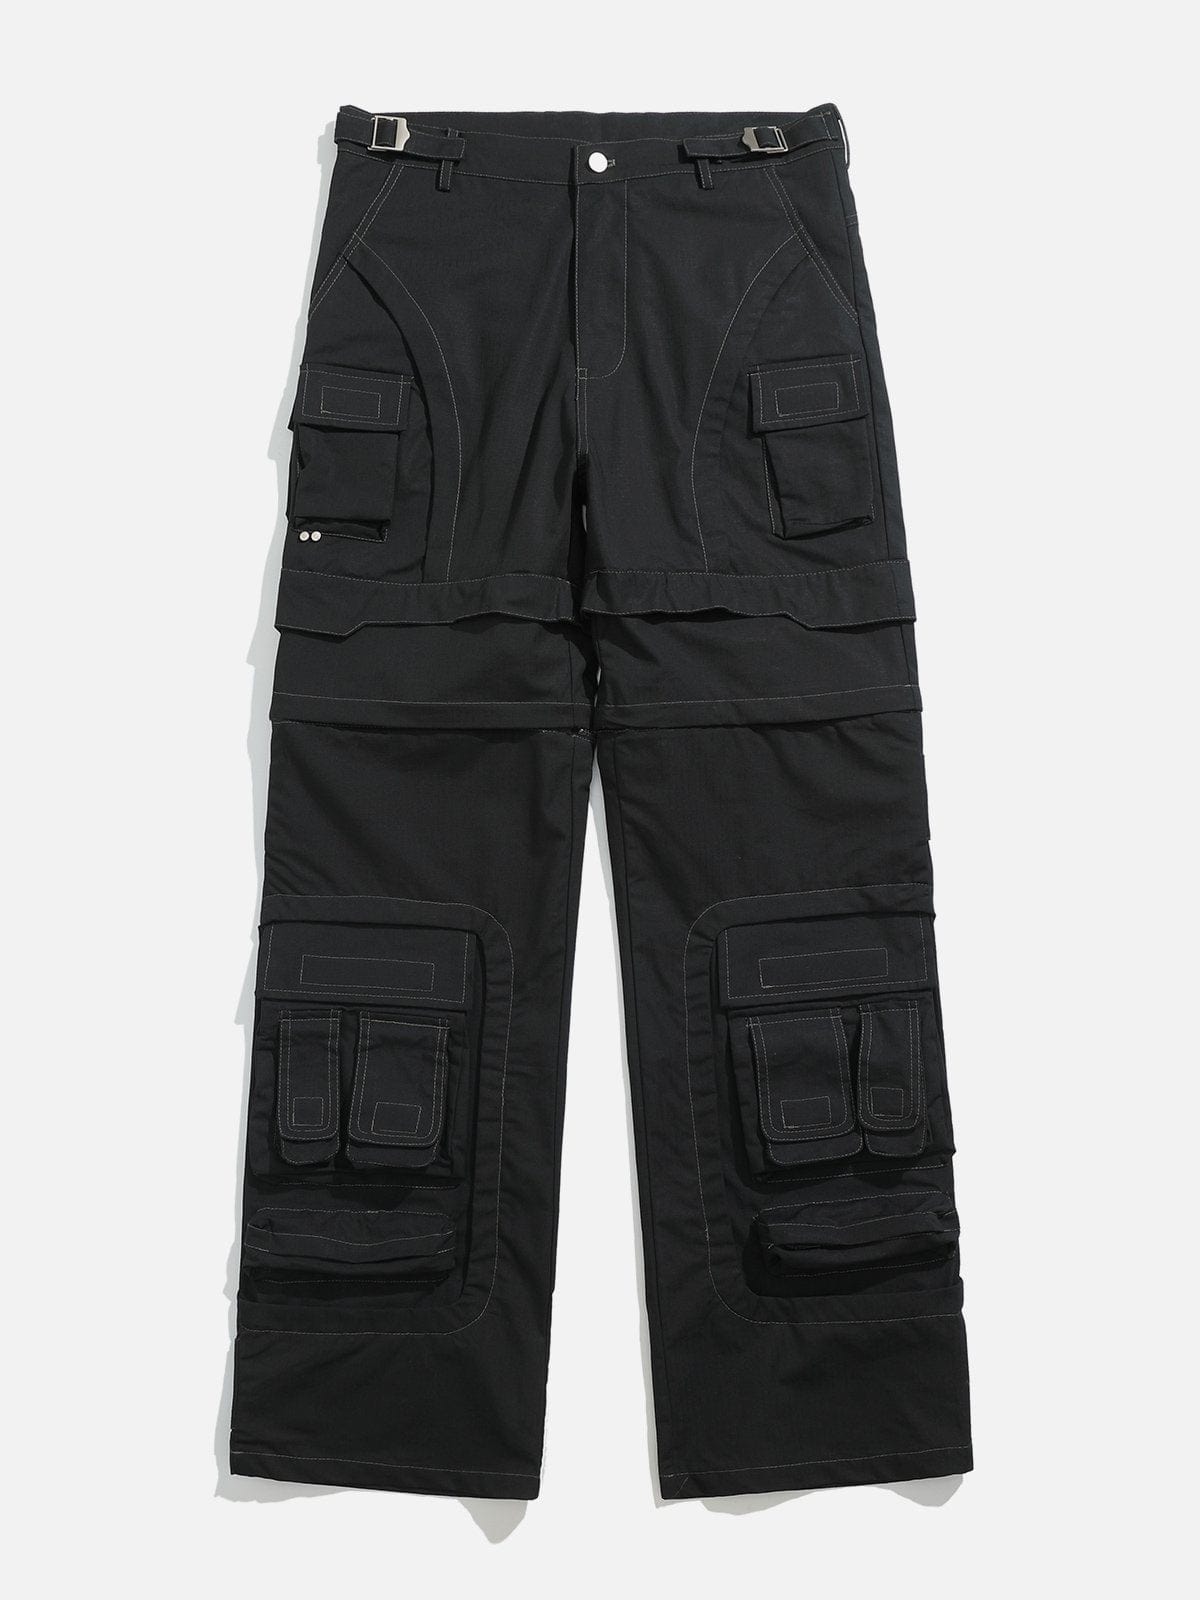 NEV Multifunctional Detachable Pants